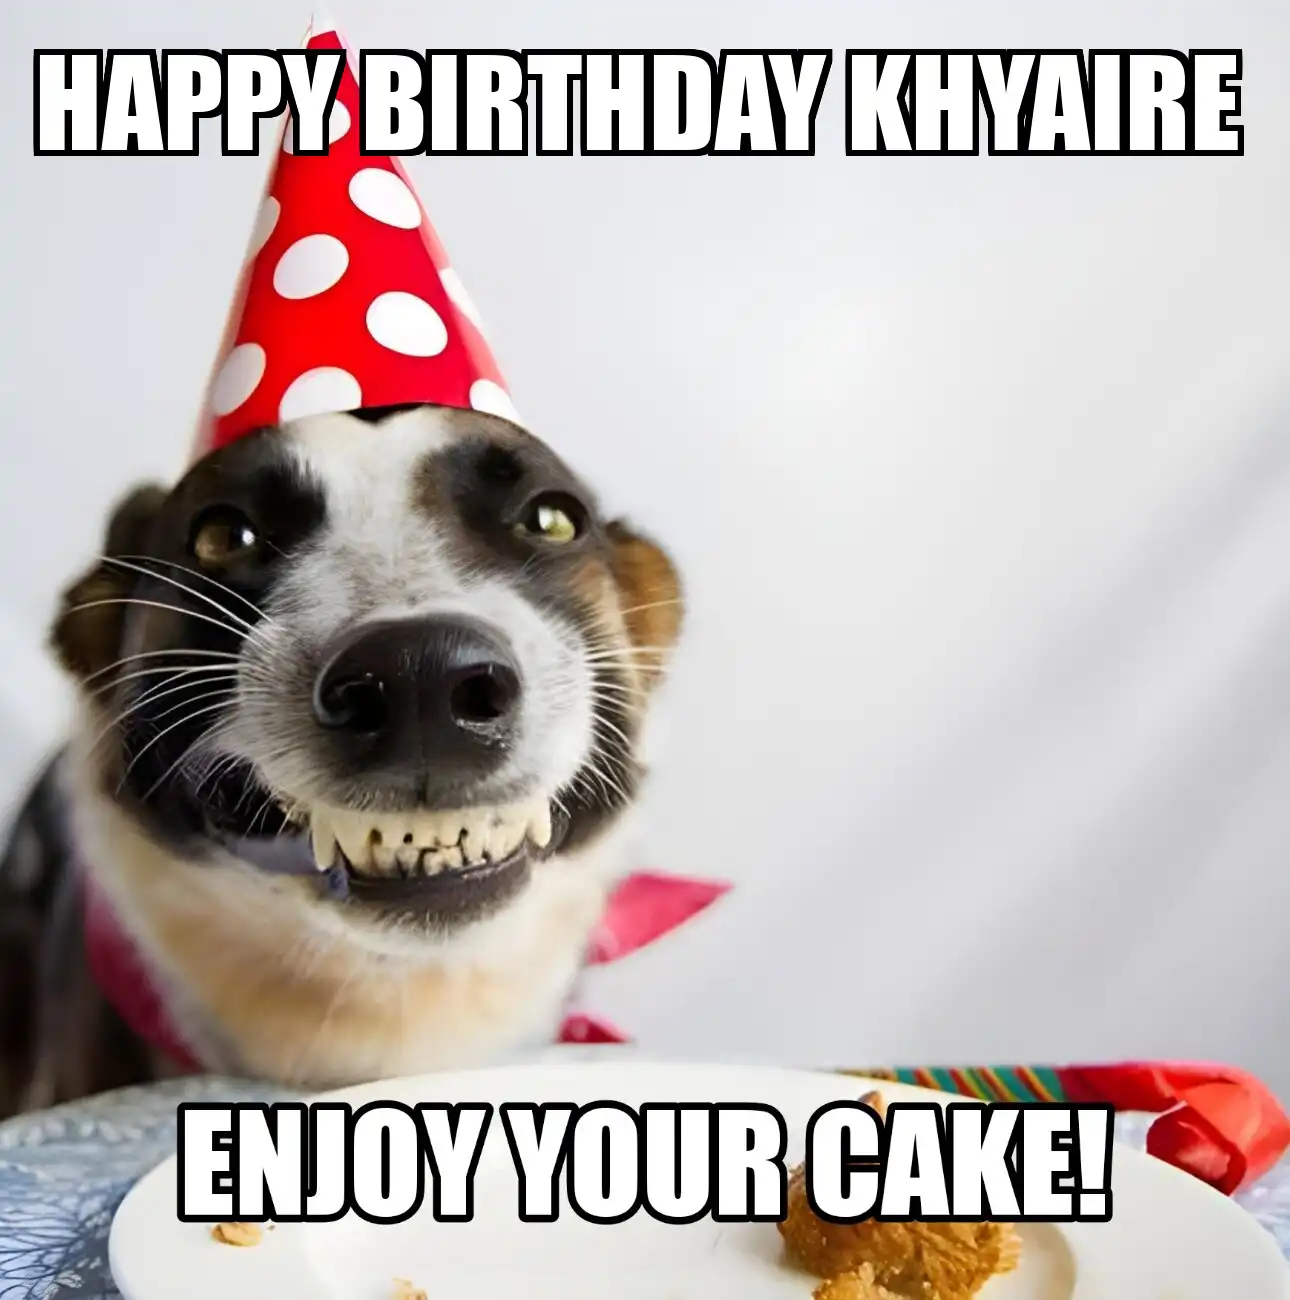 Happy Birthday Khyaire Enjoy Your Cake Dog Meme